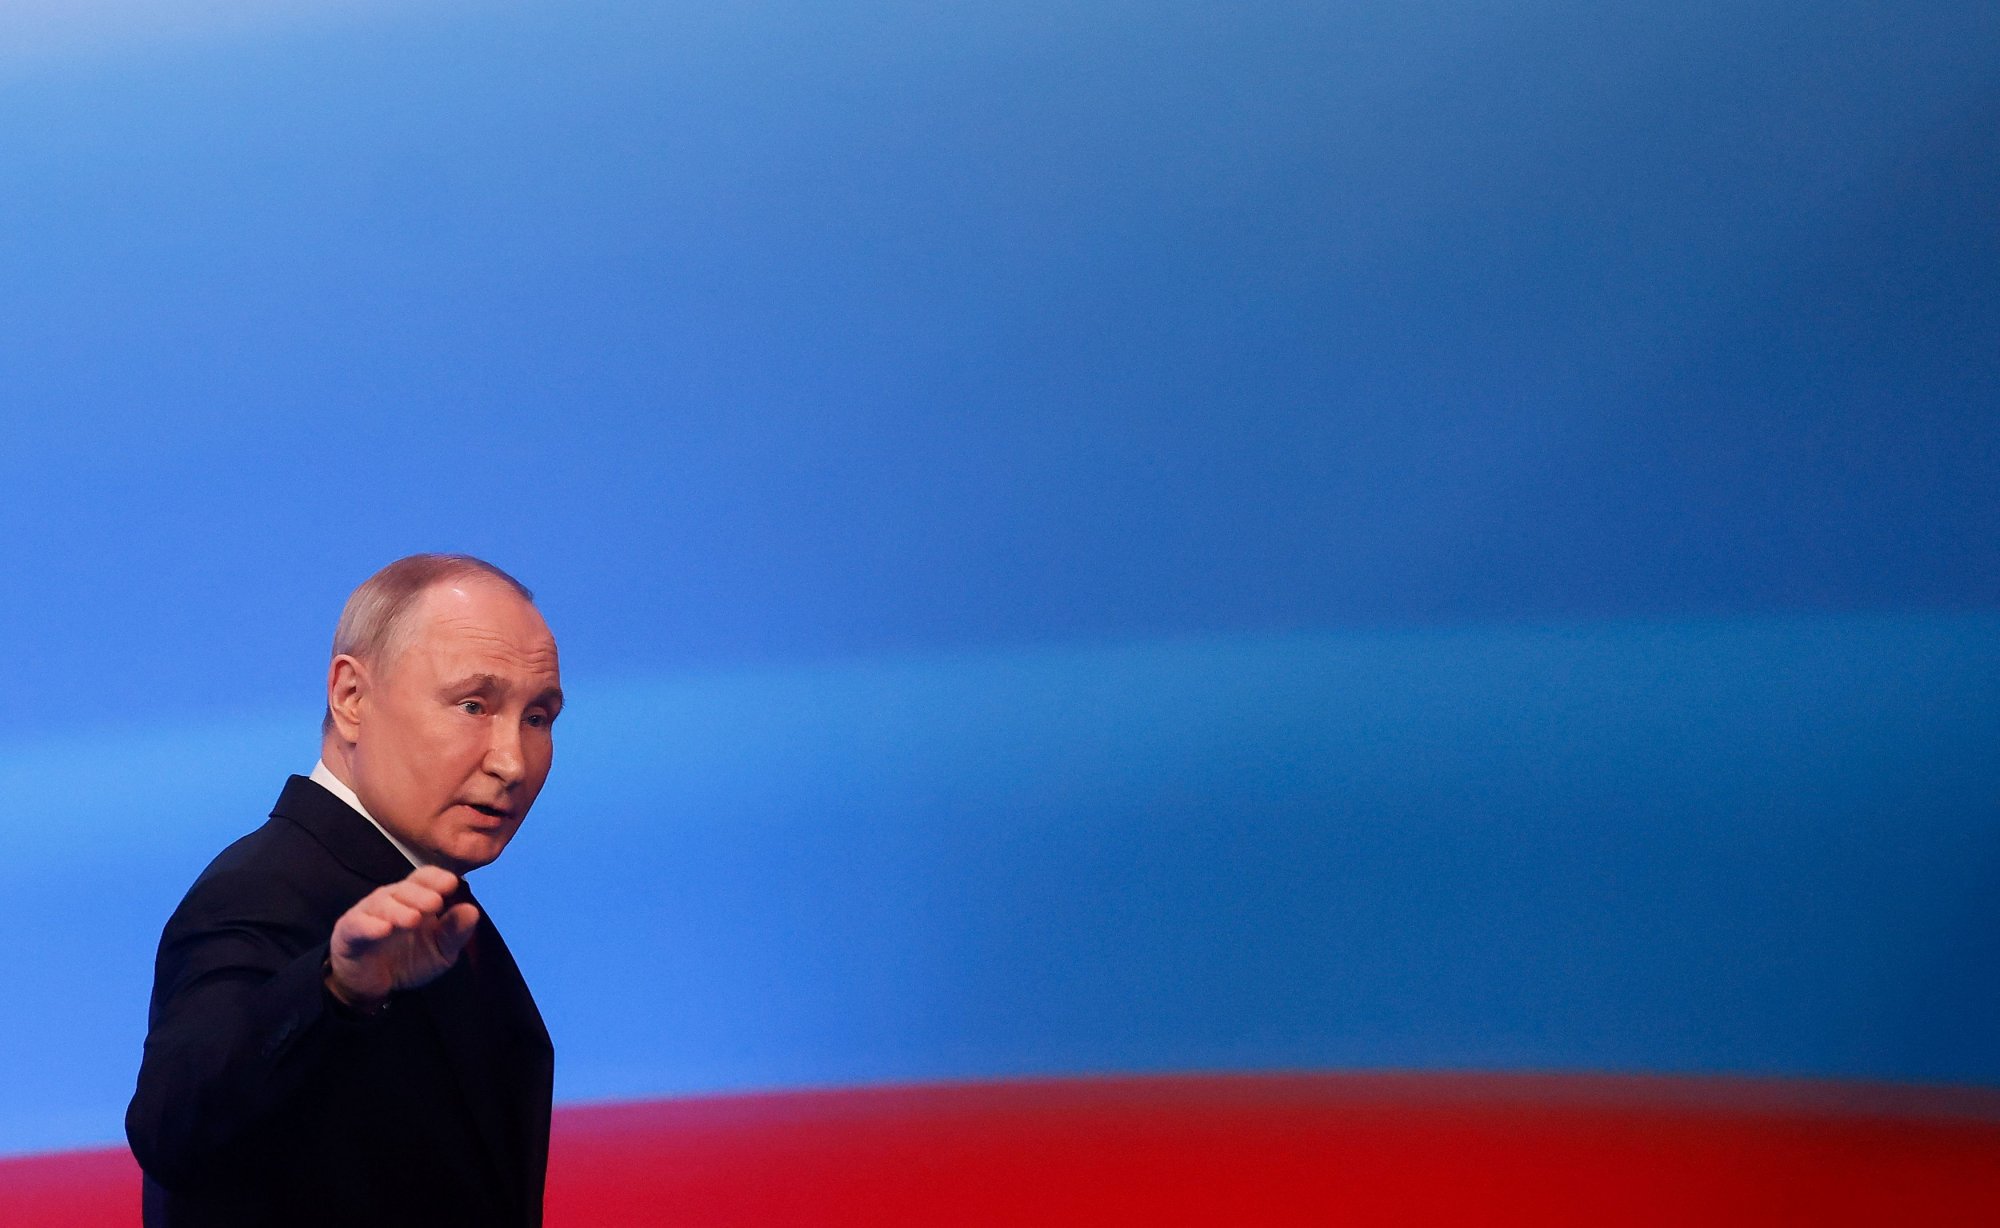 Η αέναη ηγεμονία Πούτιν και η Ρωσία 2.0